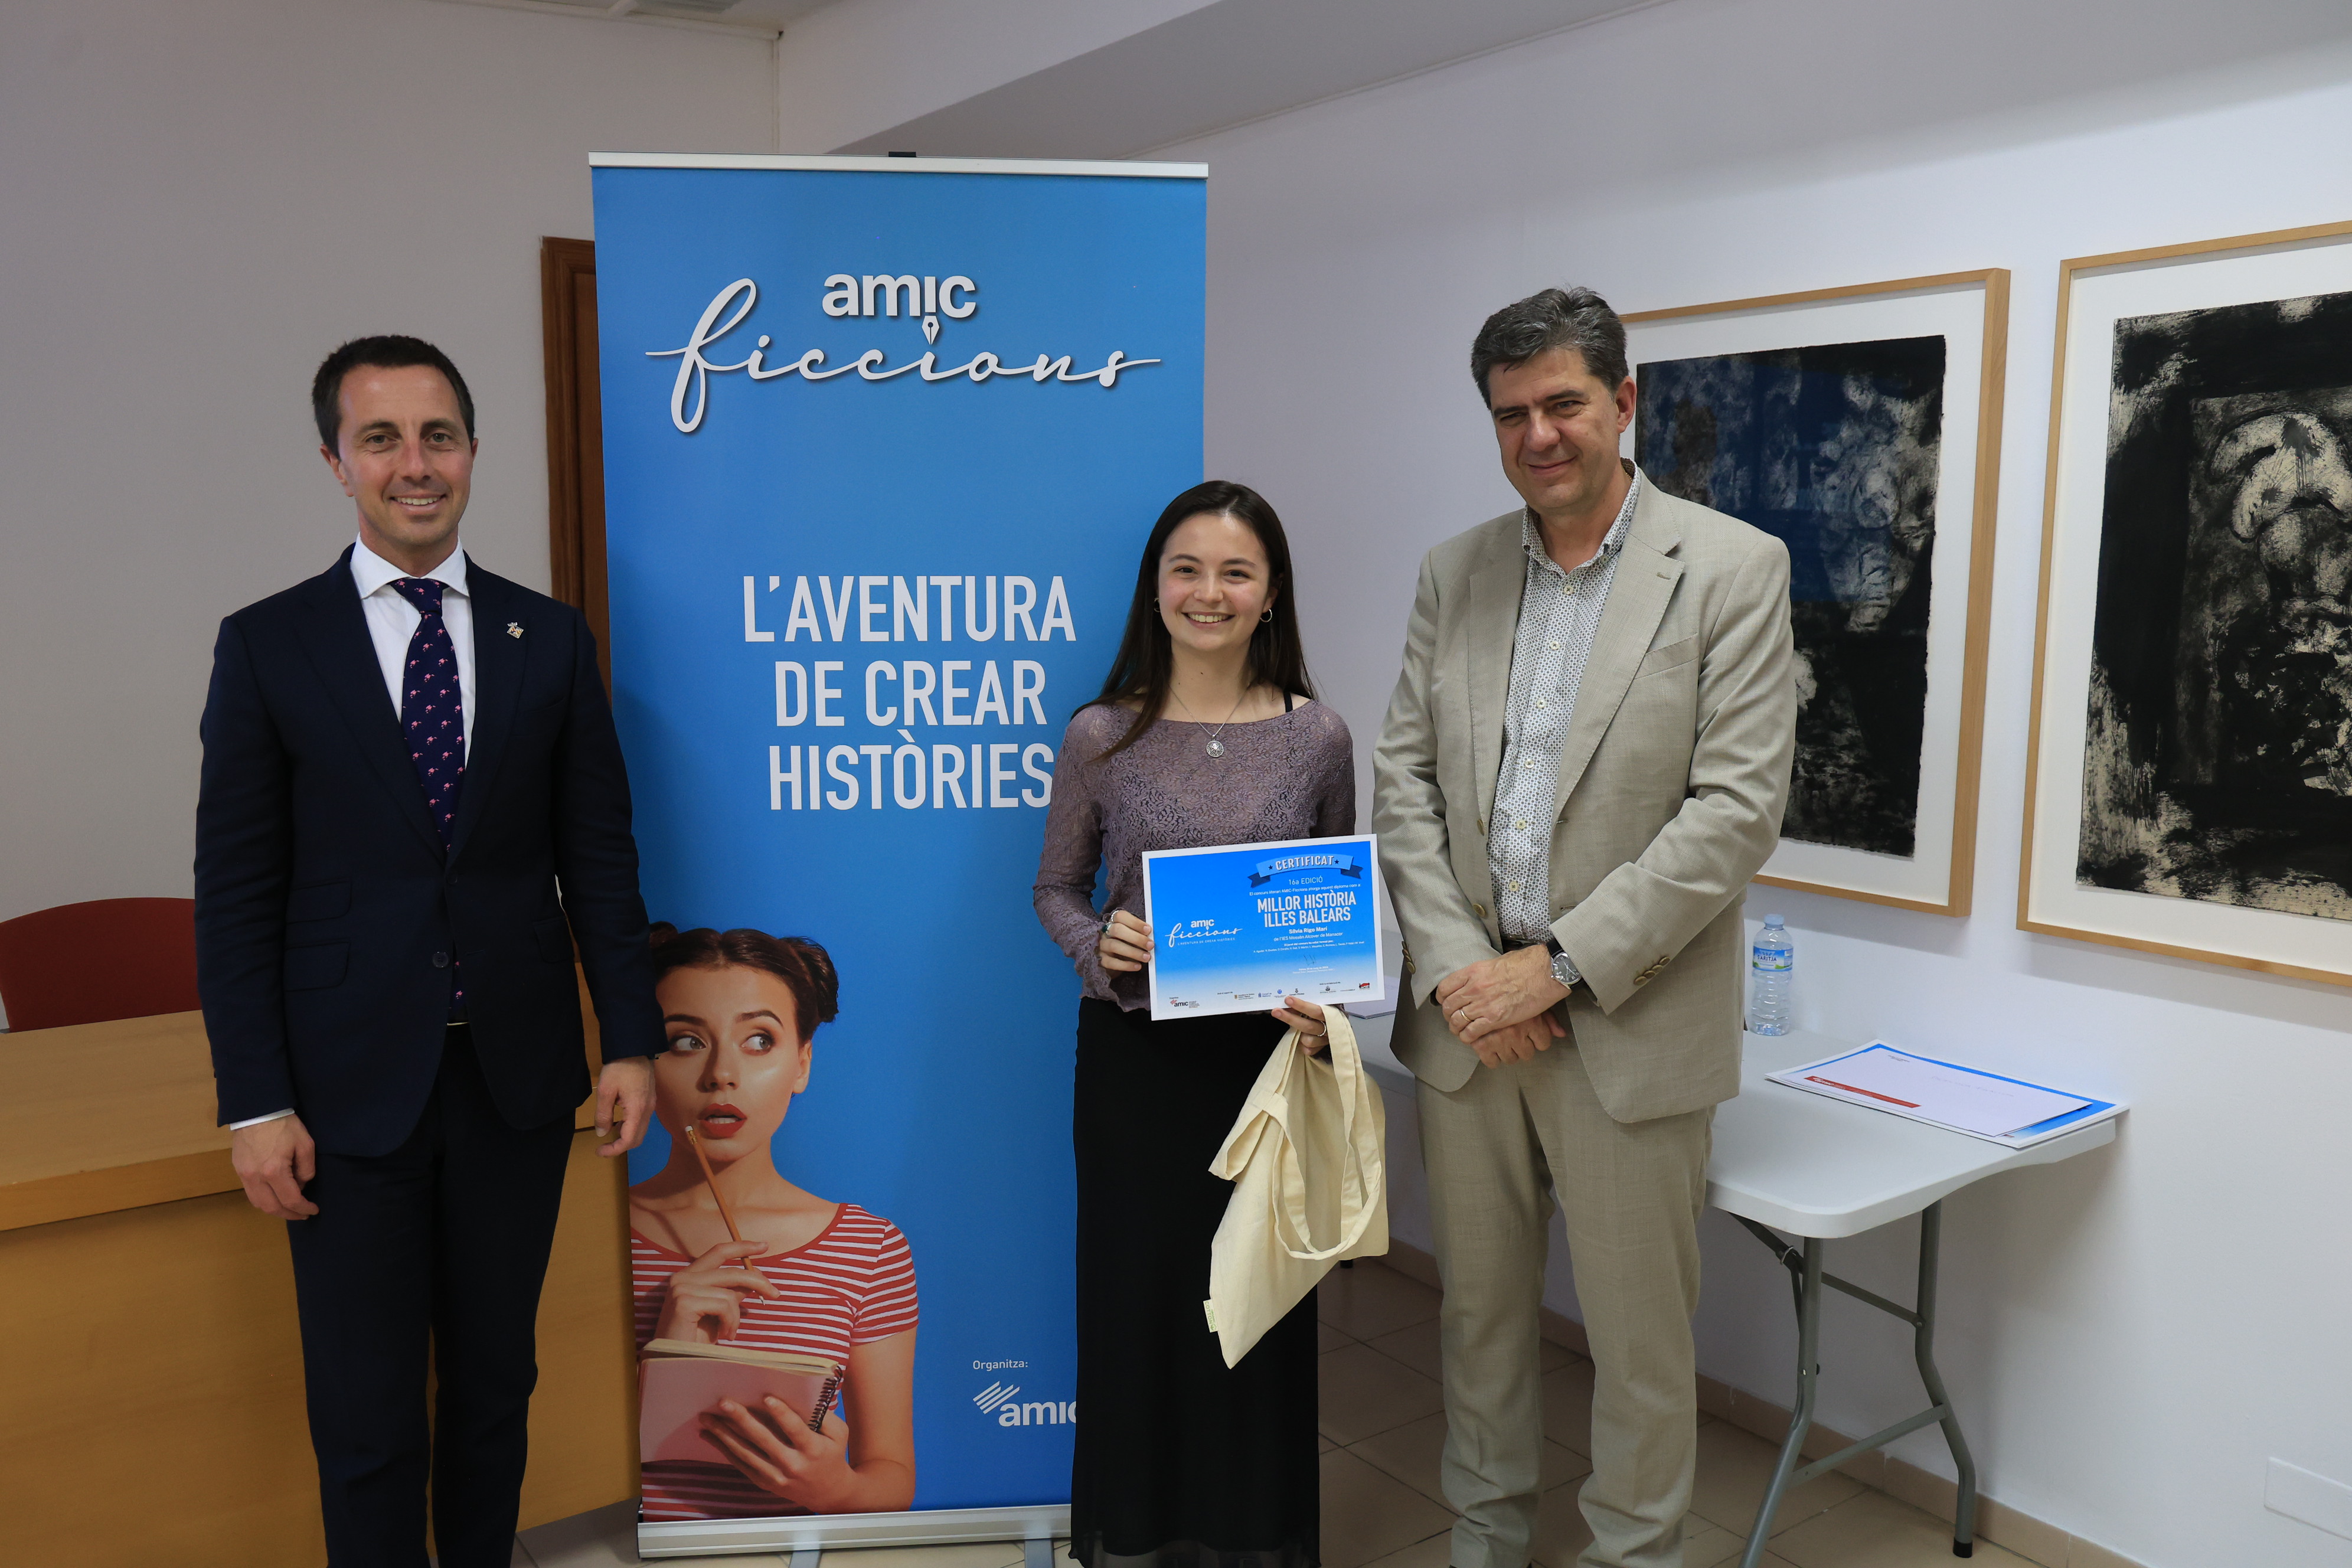 La ganadora, Silvia Rigo, recibe el premio a Mejor Historia de las Illes Balears de la 16ª edición del concurso literario de AMIC-Ficcions.